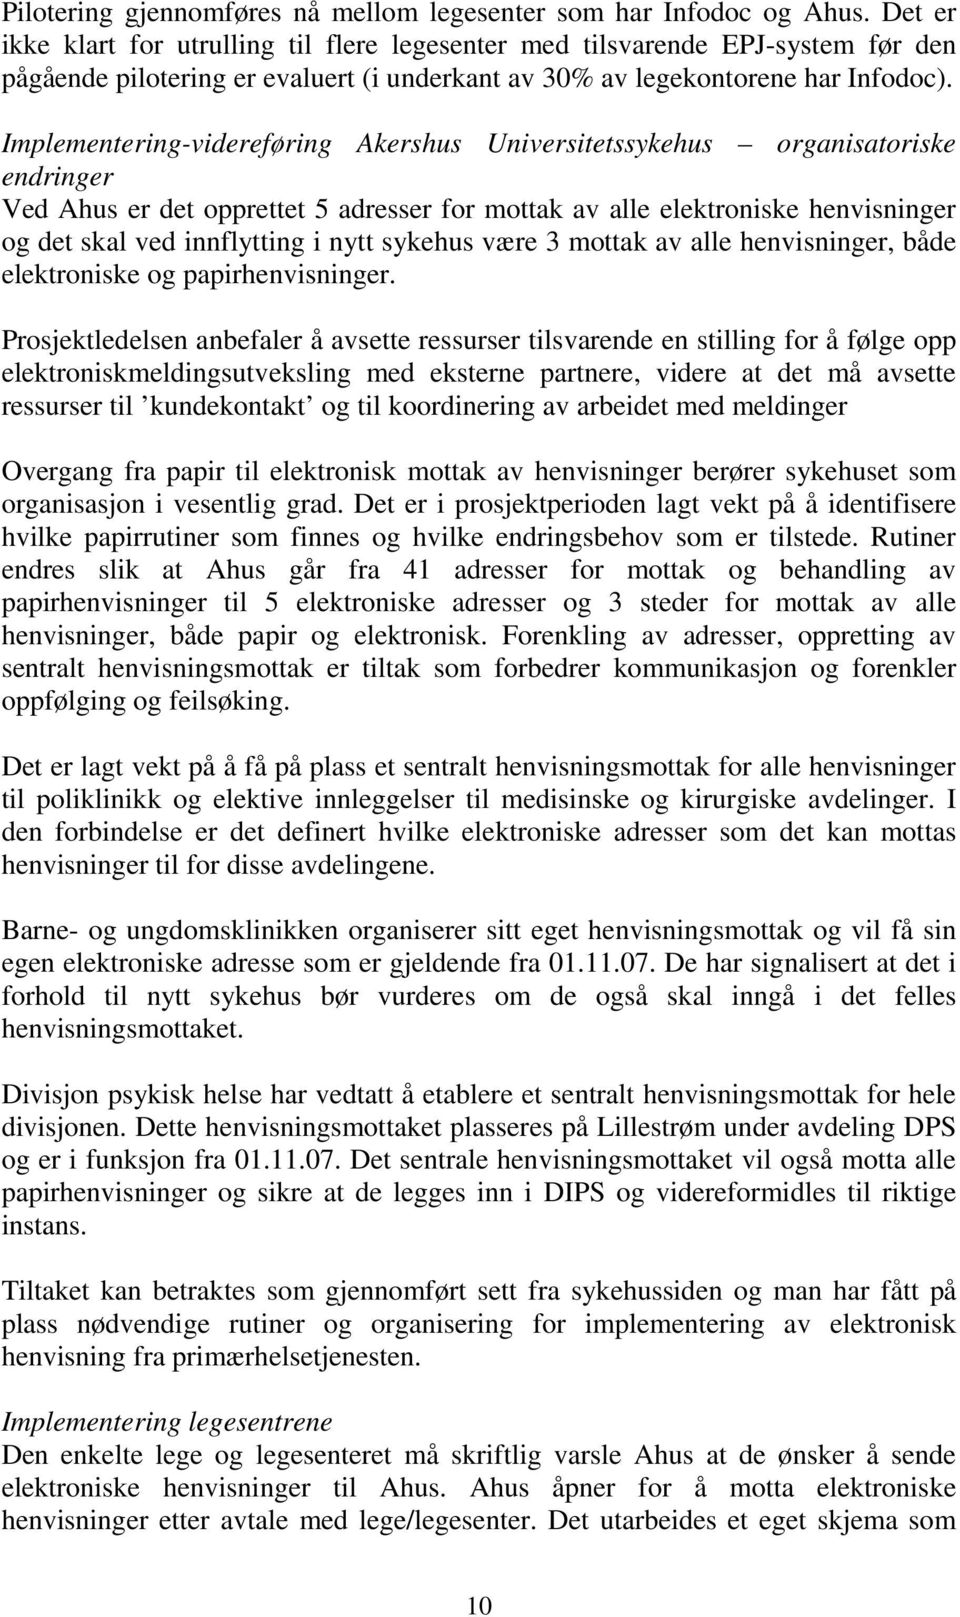 Implementering-videreføring Akershus Universitetssykehus organisatoriske endringer Ved Ahus er det opprettet 5 adresser for mottak av alle elektroniske henvisninger og det skal ved innflytting i nytt